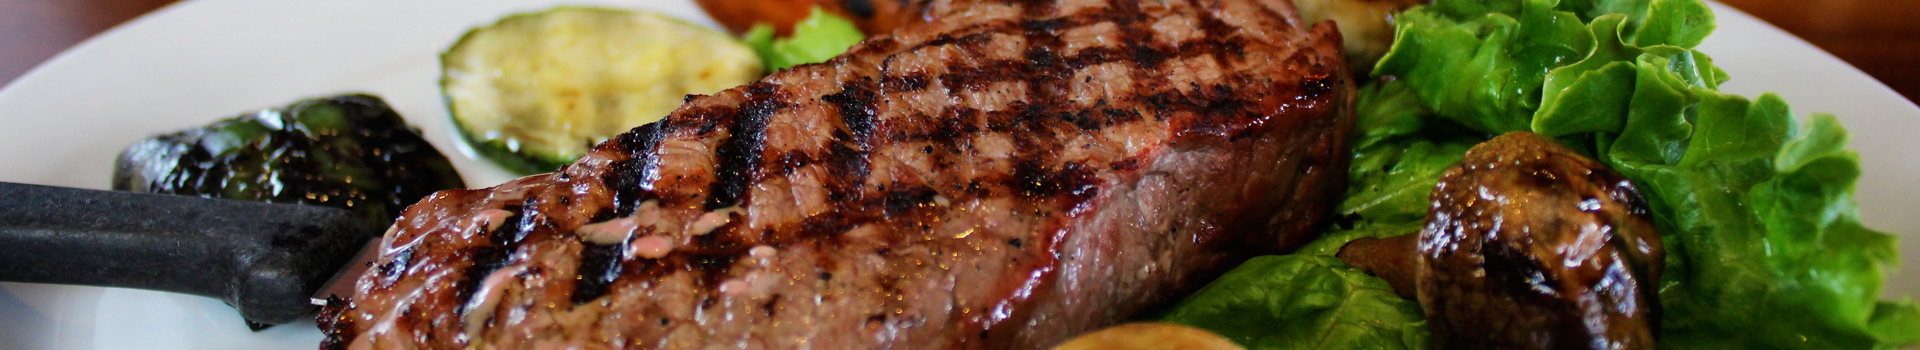 Steak_Slide